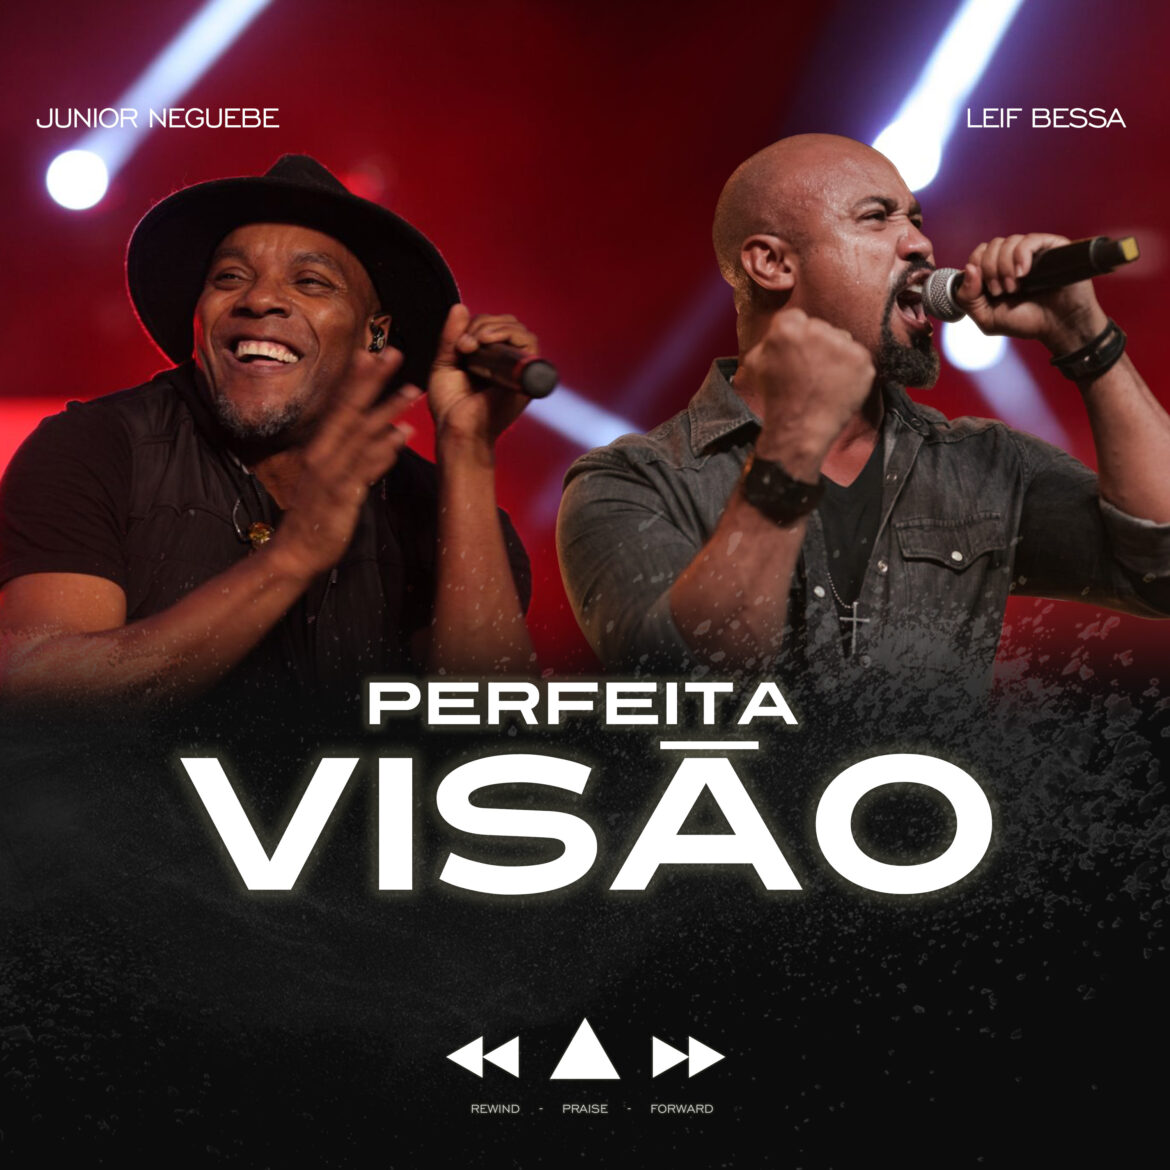 Leif Bessa lança novo single “Perfeita Visão”, com participação de Júnior Neguebe